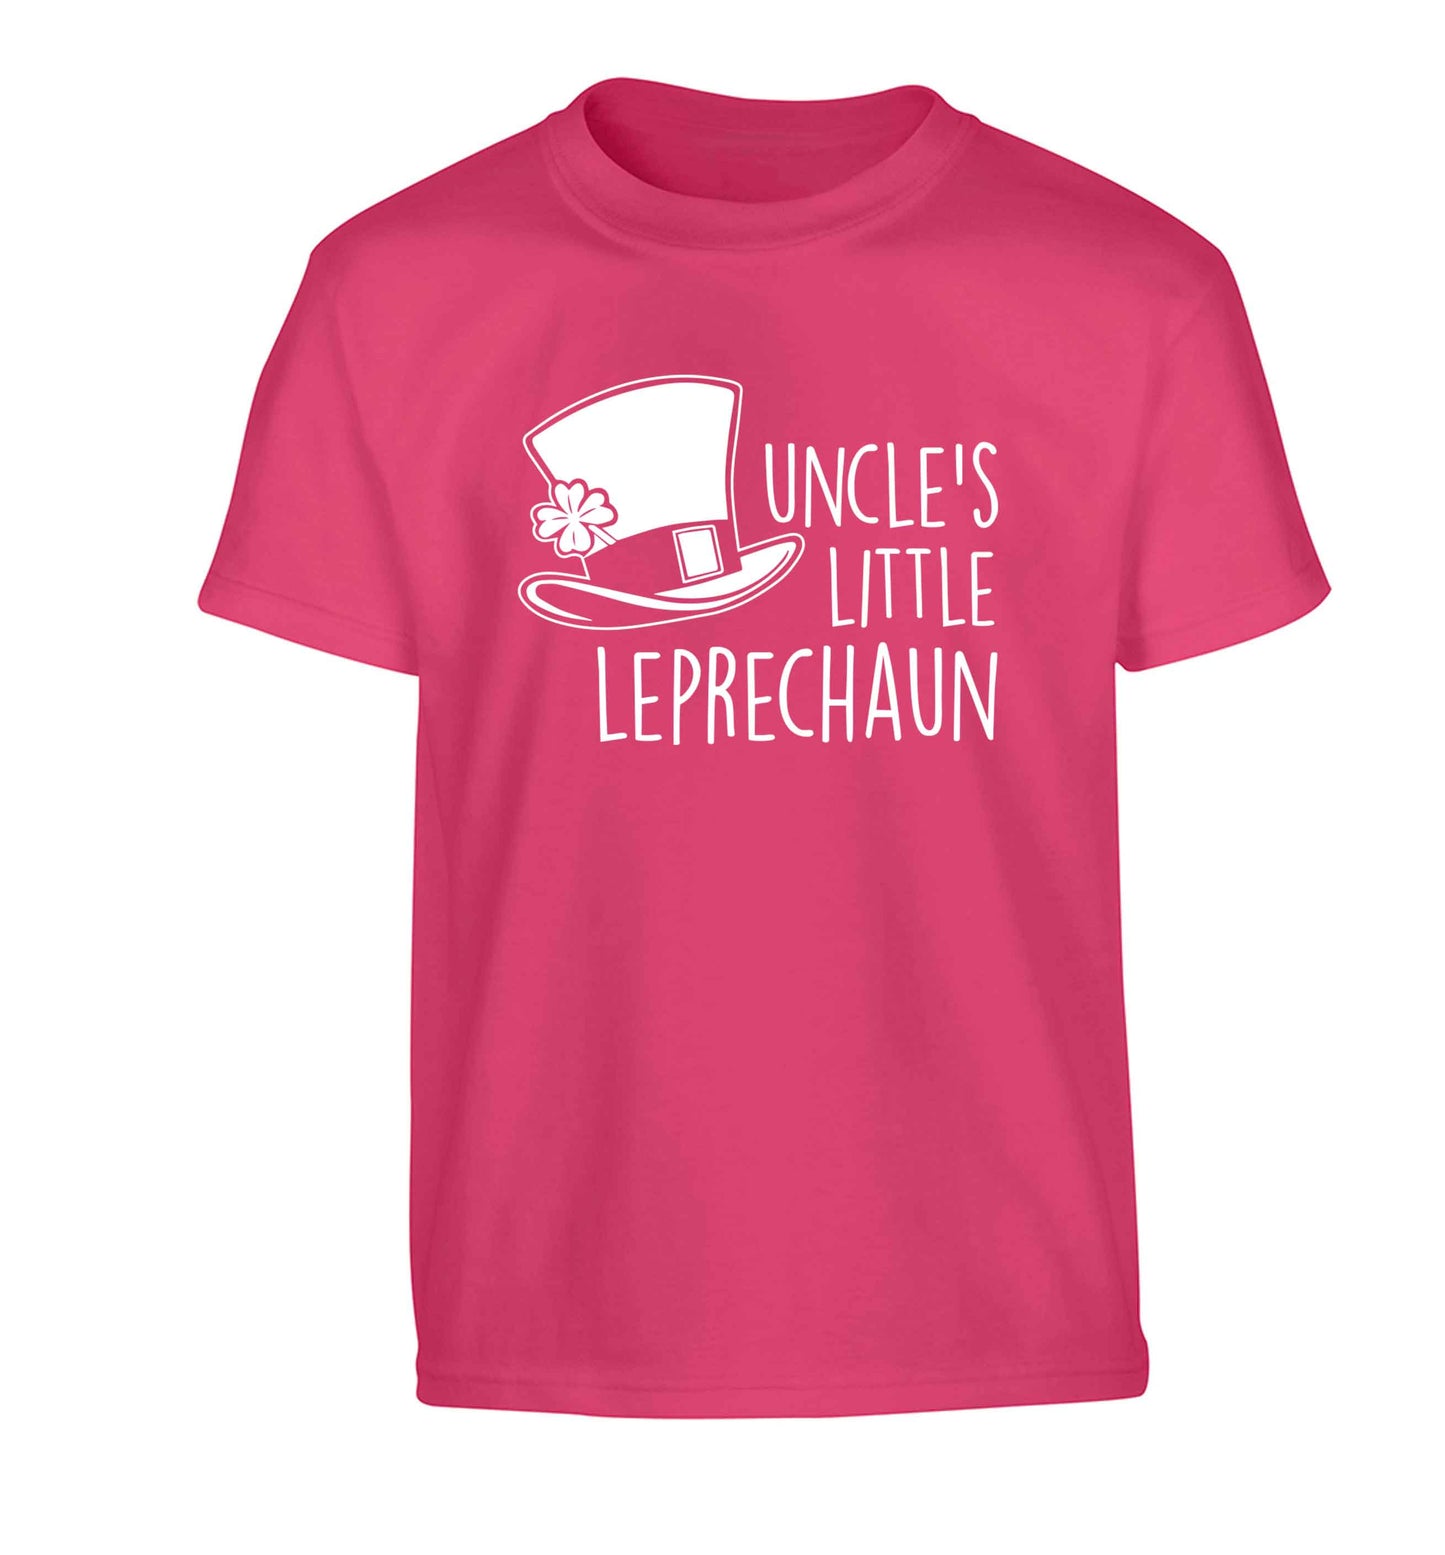 Uncles little leprechaun Children's pink Tshirt 12-13 Years